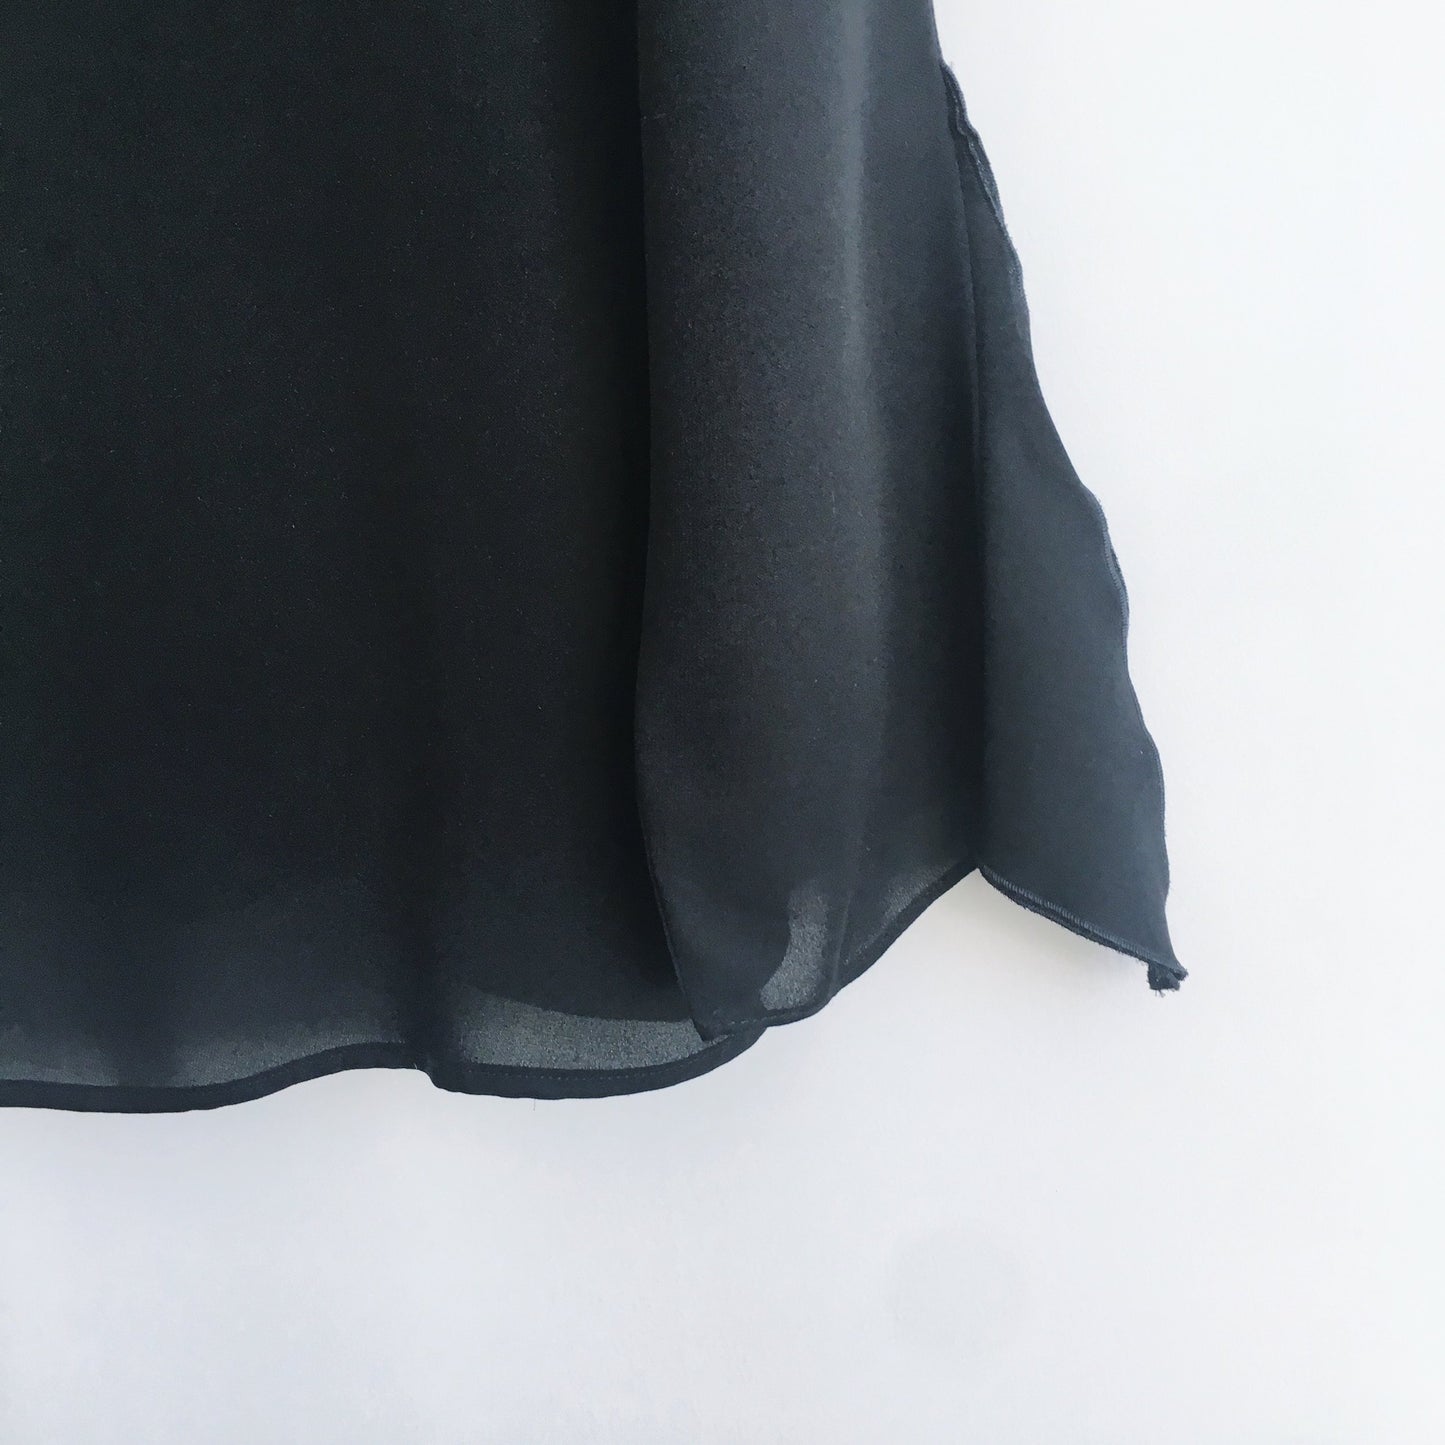 armani collezioni silk blouse with ruffle collar - size 8